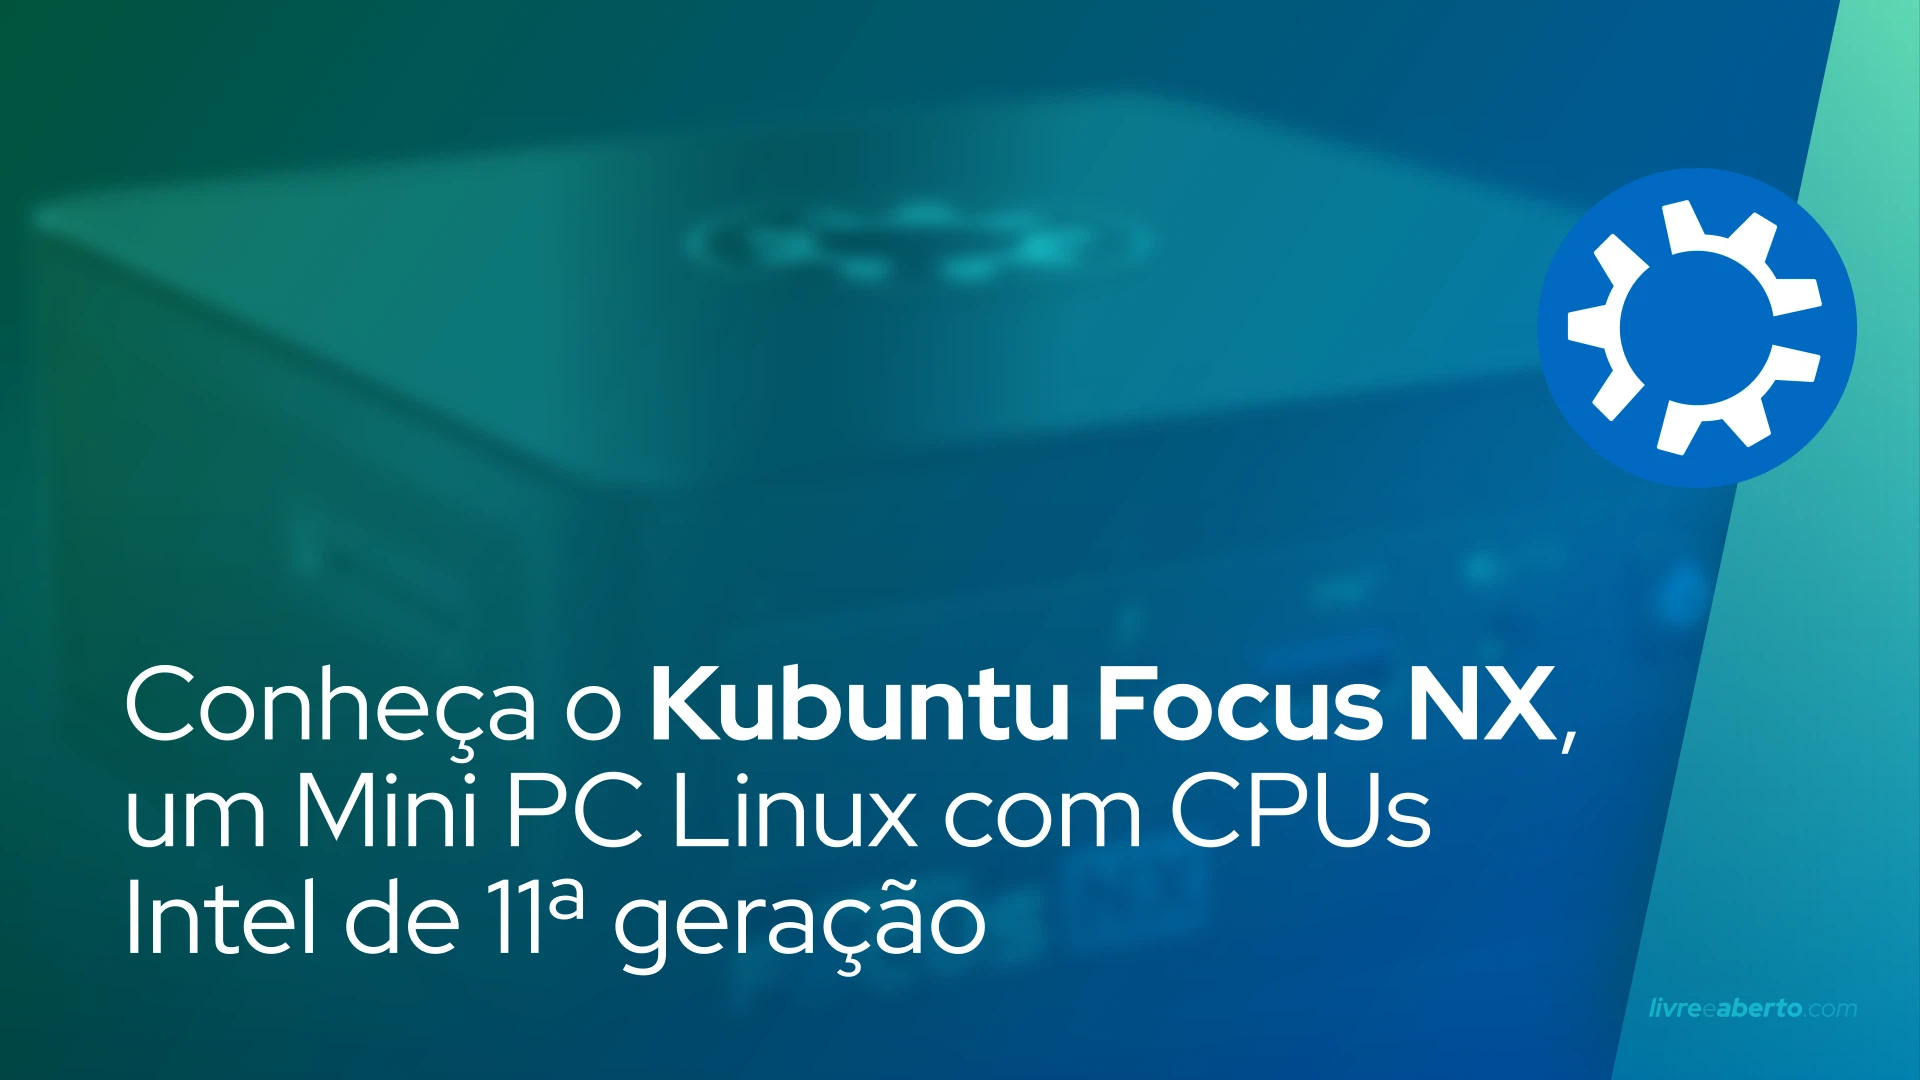 Conheça o Kubuntu Focus NX, um Mini PC Linux com CPUs Intel de 11ª geração e até 64GB de RAM